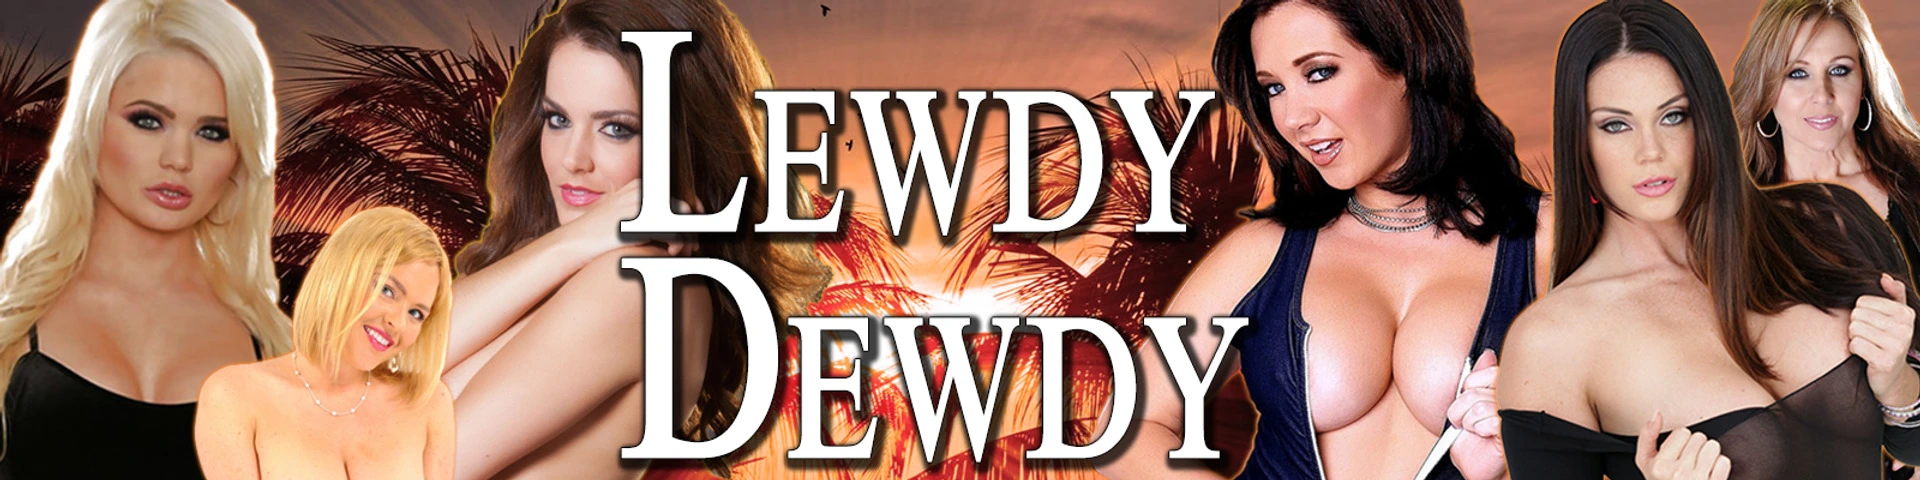 Lewdy Dewdy [v0.3] main image